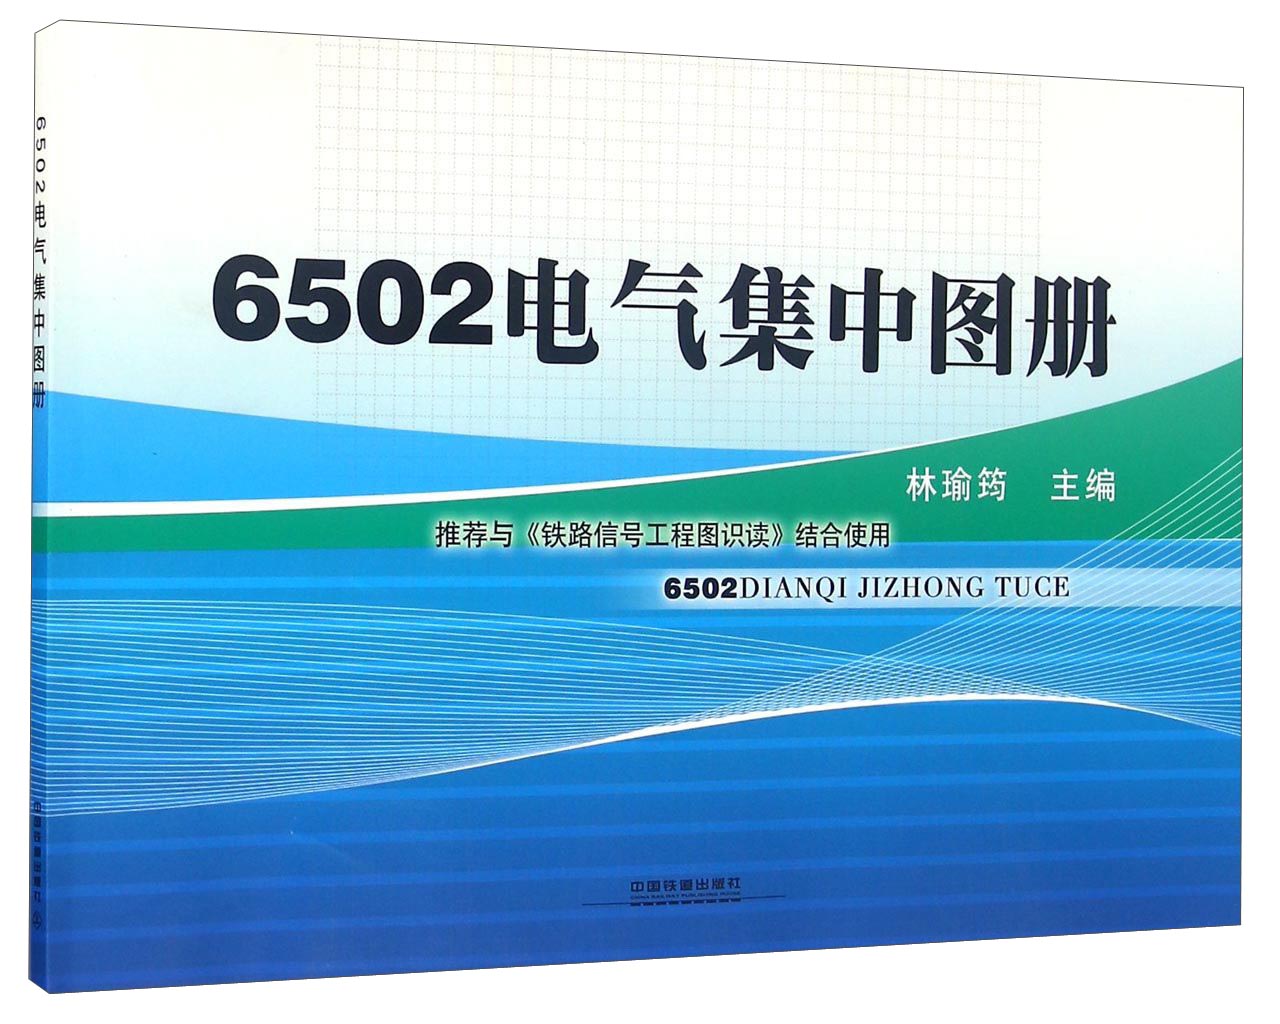 6502电气集中图册 azw3格式下载